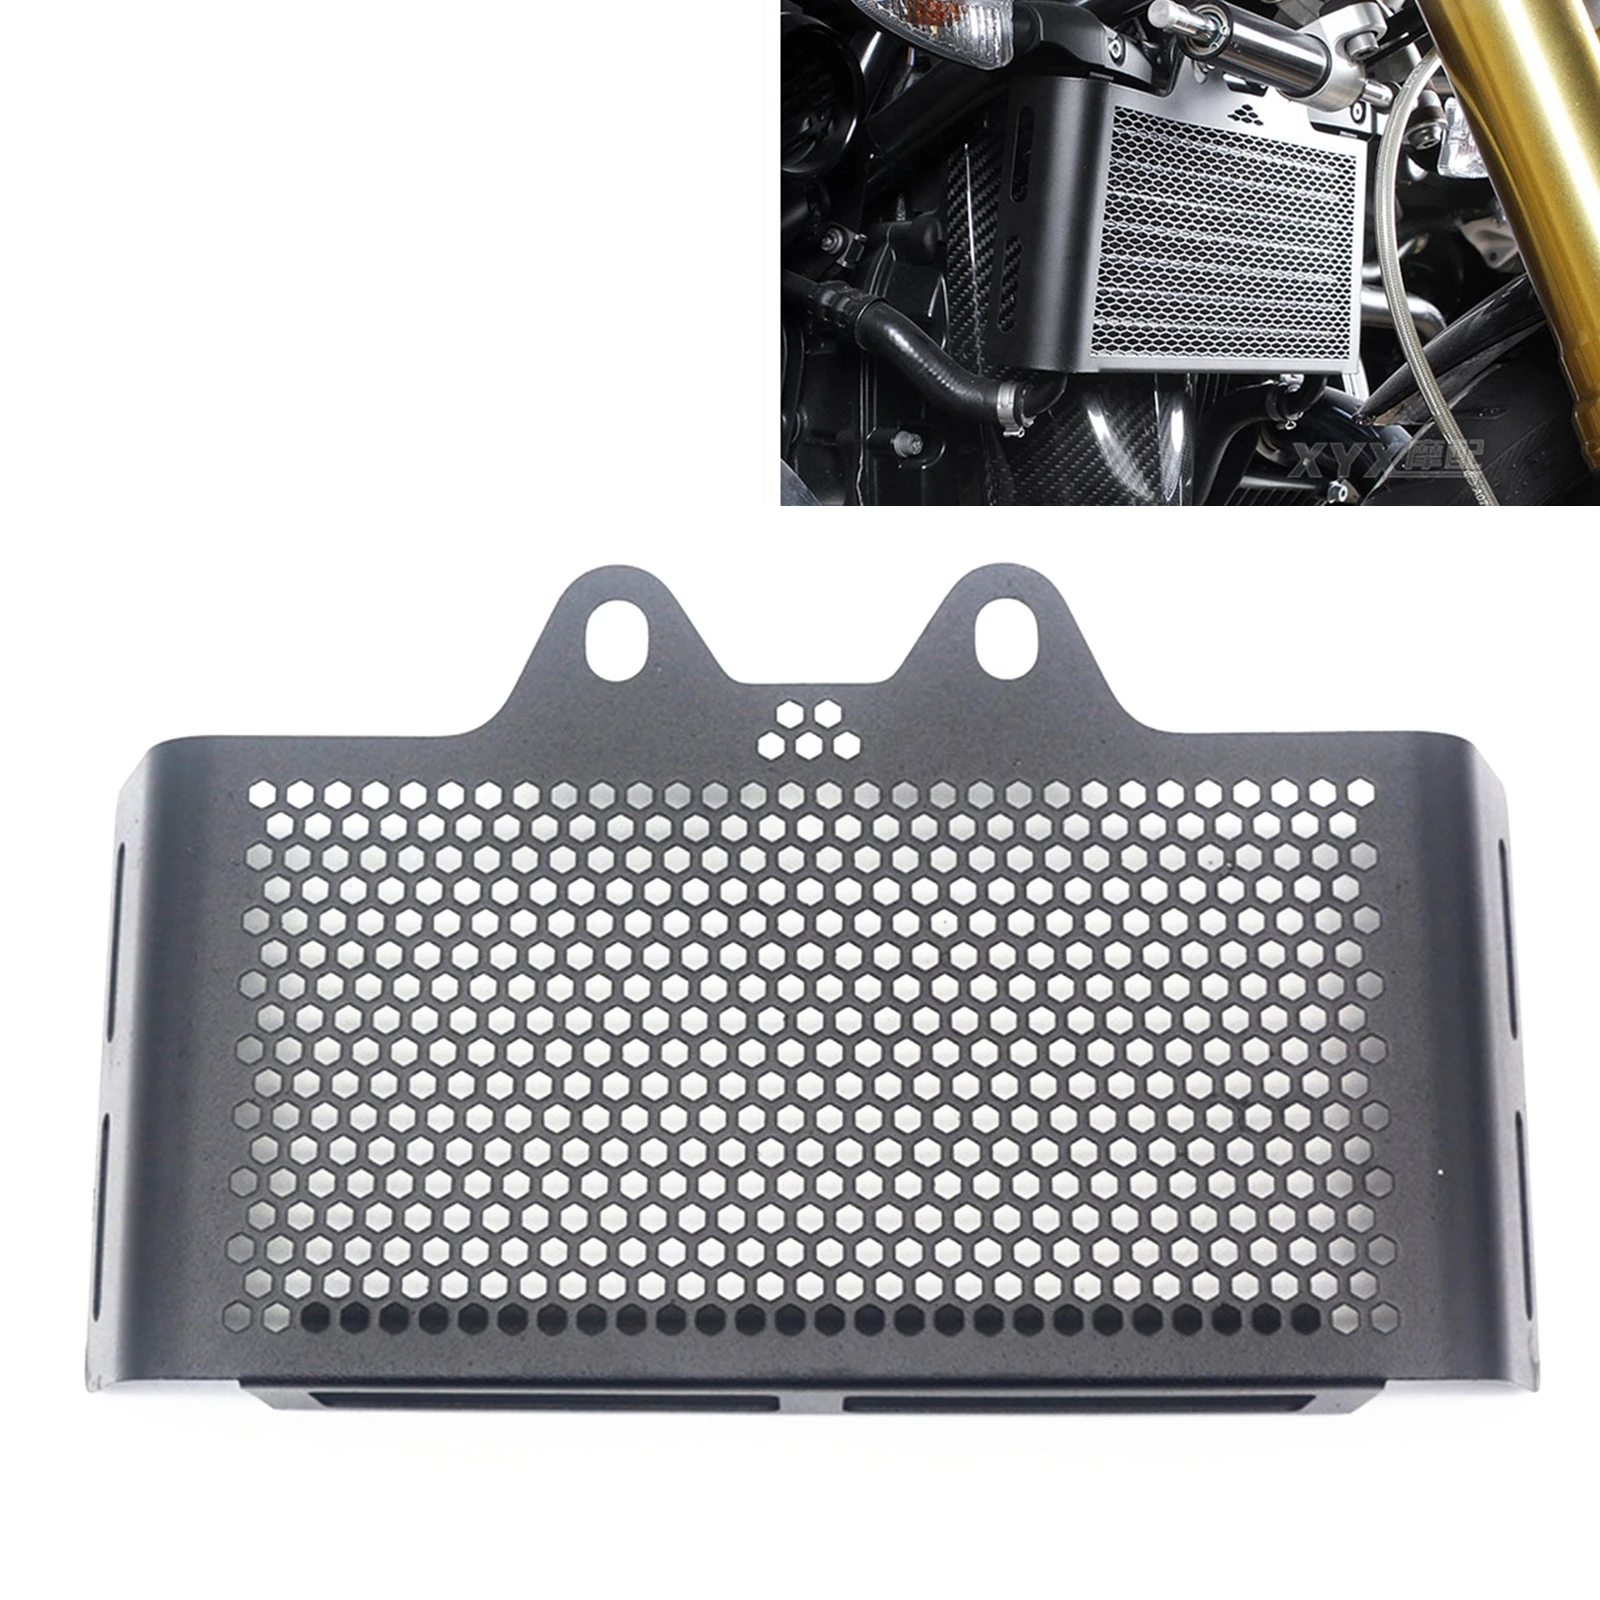 

Черная защитная крышка радиатора решетки радиатора для двигателя BMW R Nine T R9T 2013-2020